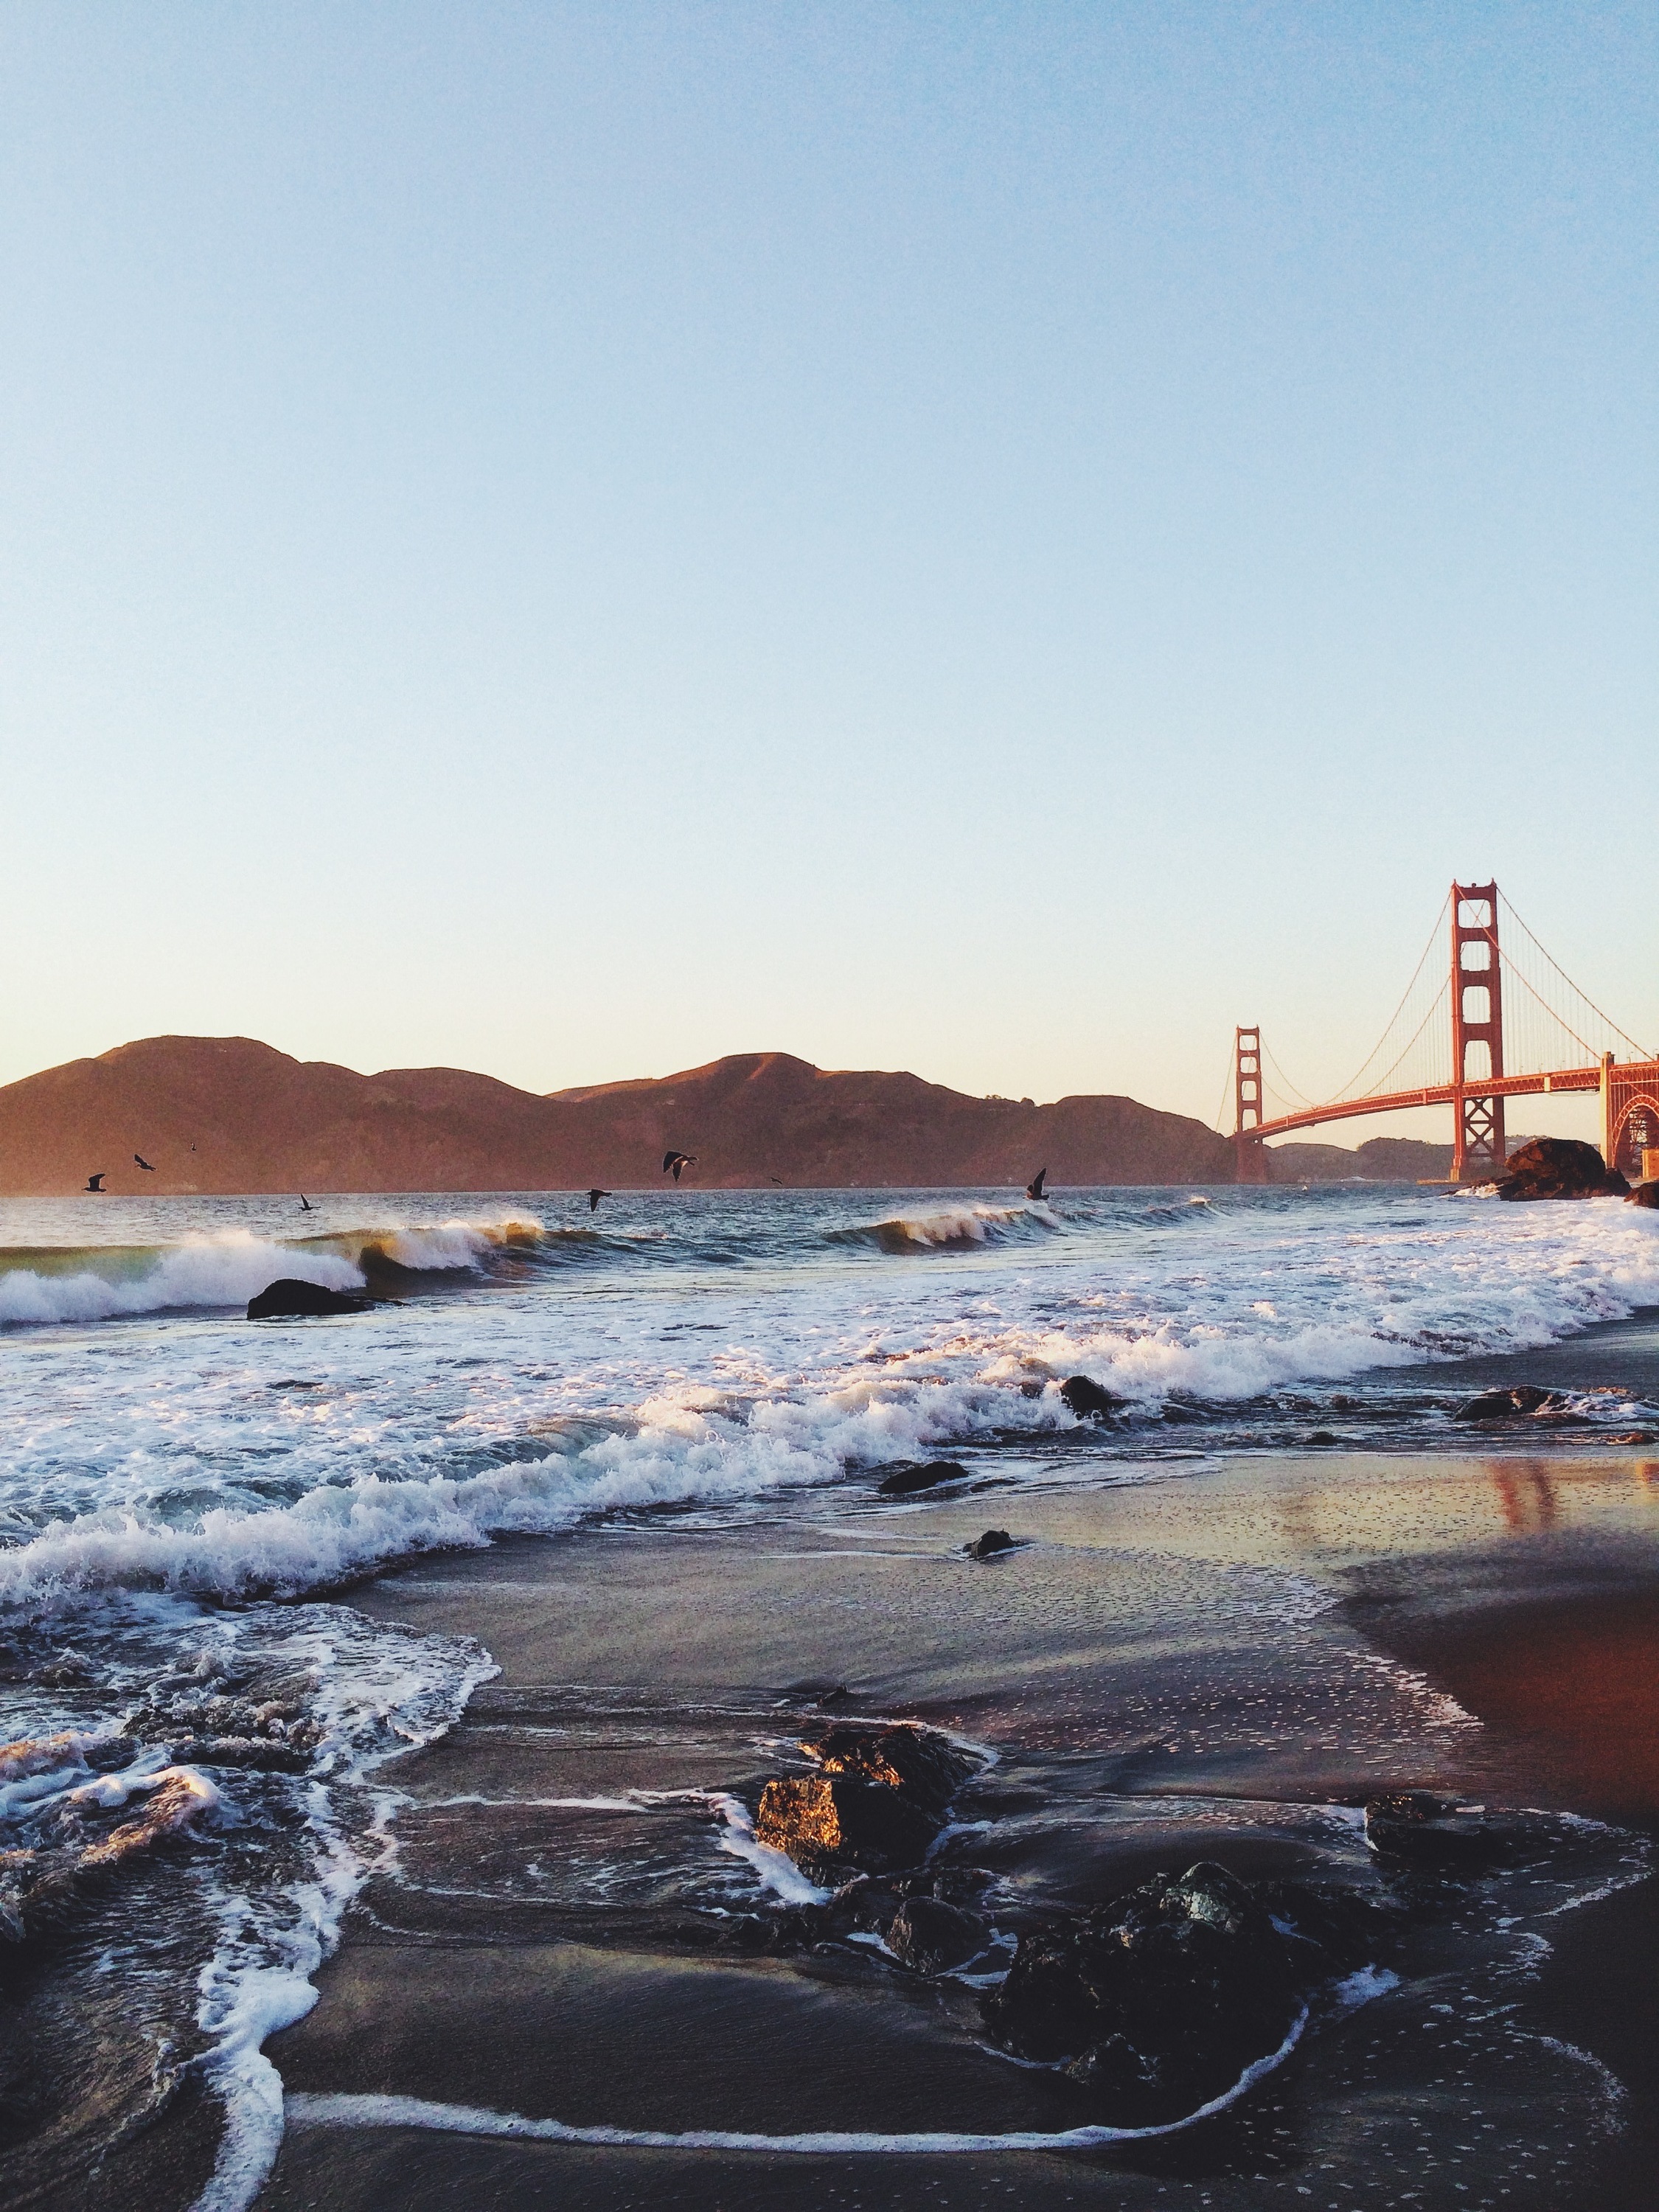 Golden Gate Bridge San Francisco Ocean Beach Rocks Stones